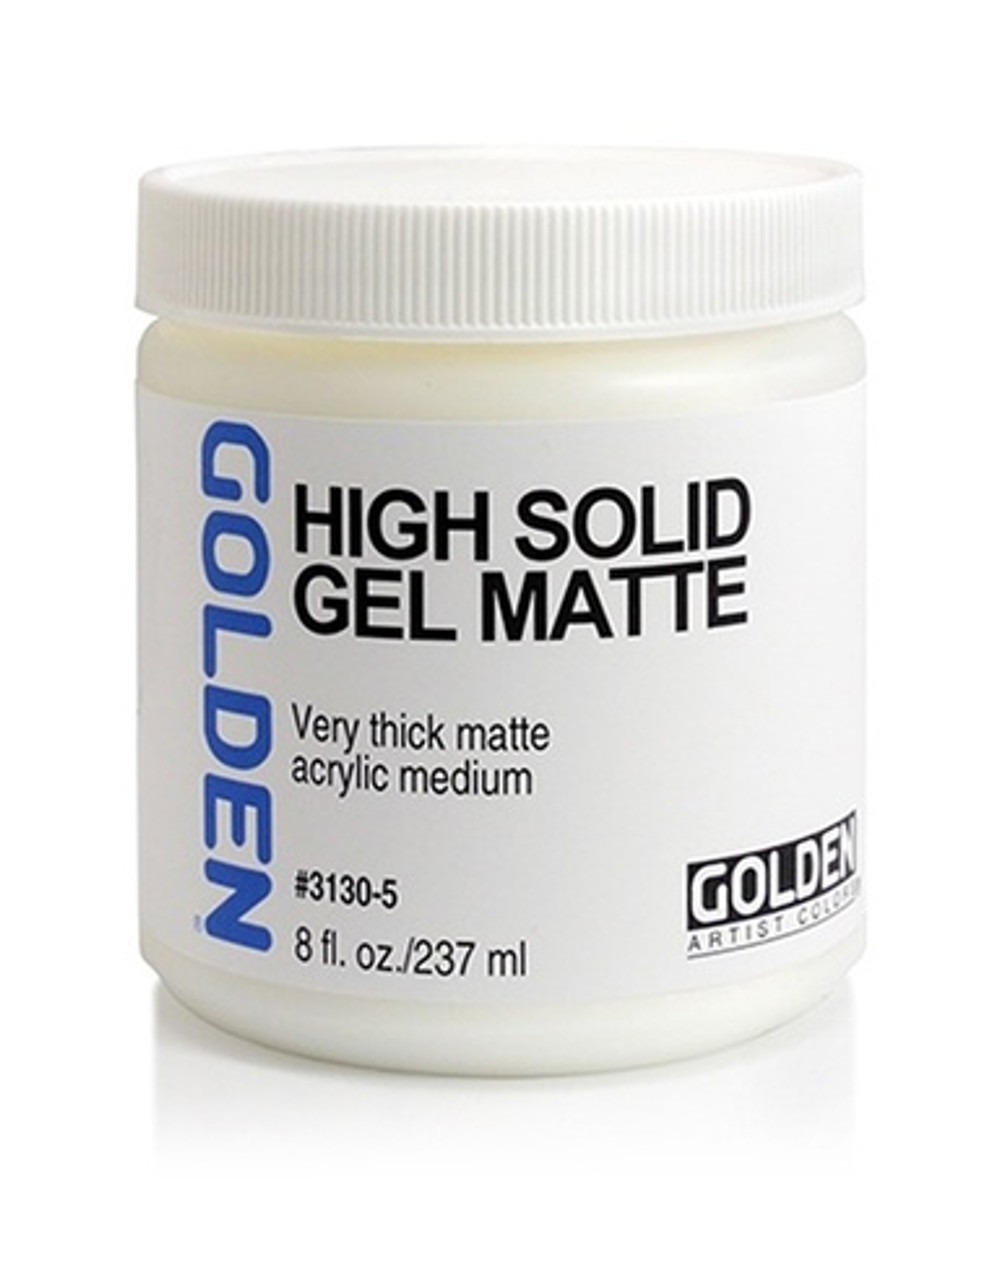 Golden High Solid Gel Matte 237ml